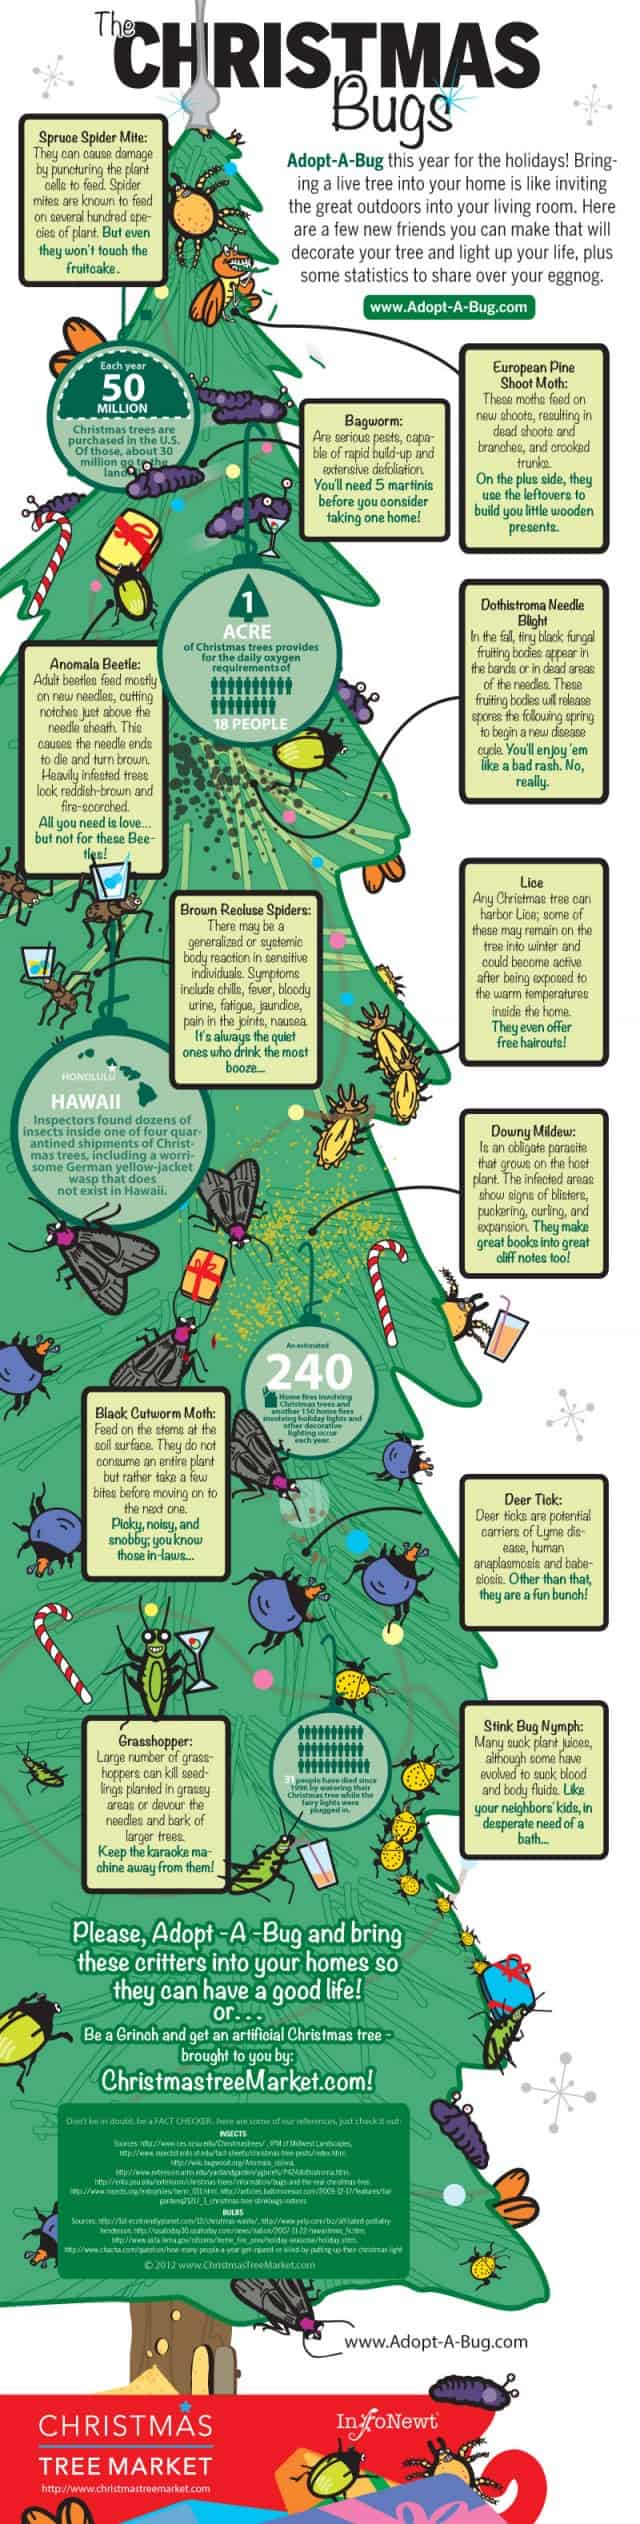 Christmas Bugs Infographic